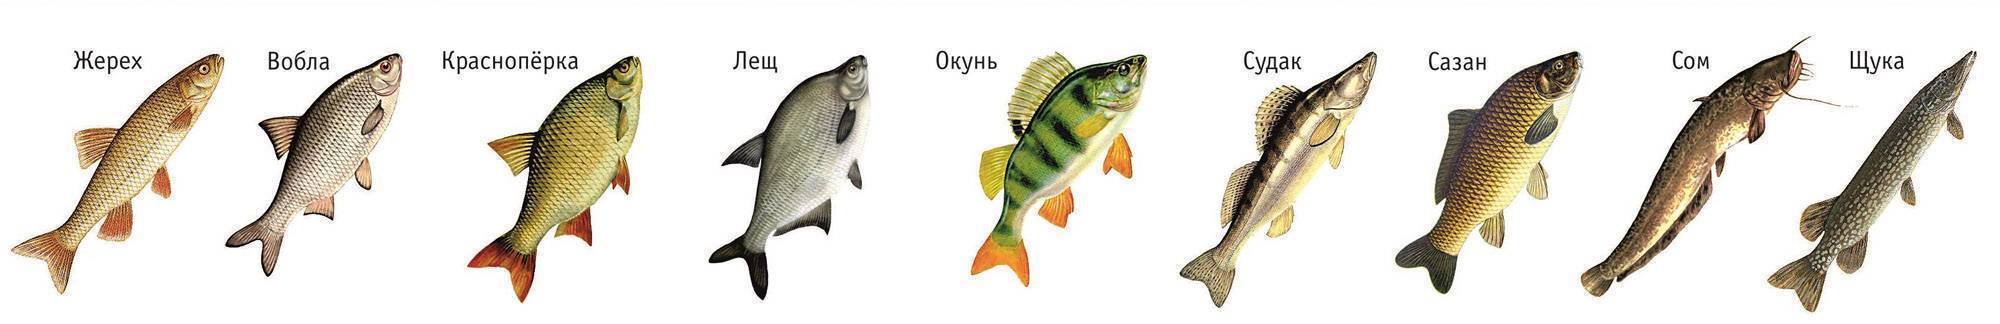 Какие рыбы река волга. Какая рыба водится в Астрахани на Волге. Какие рыбы водятся в реке Волга. Судак, жерех и берш отличие. Рыба обитающая в Волге.